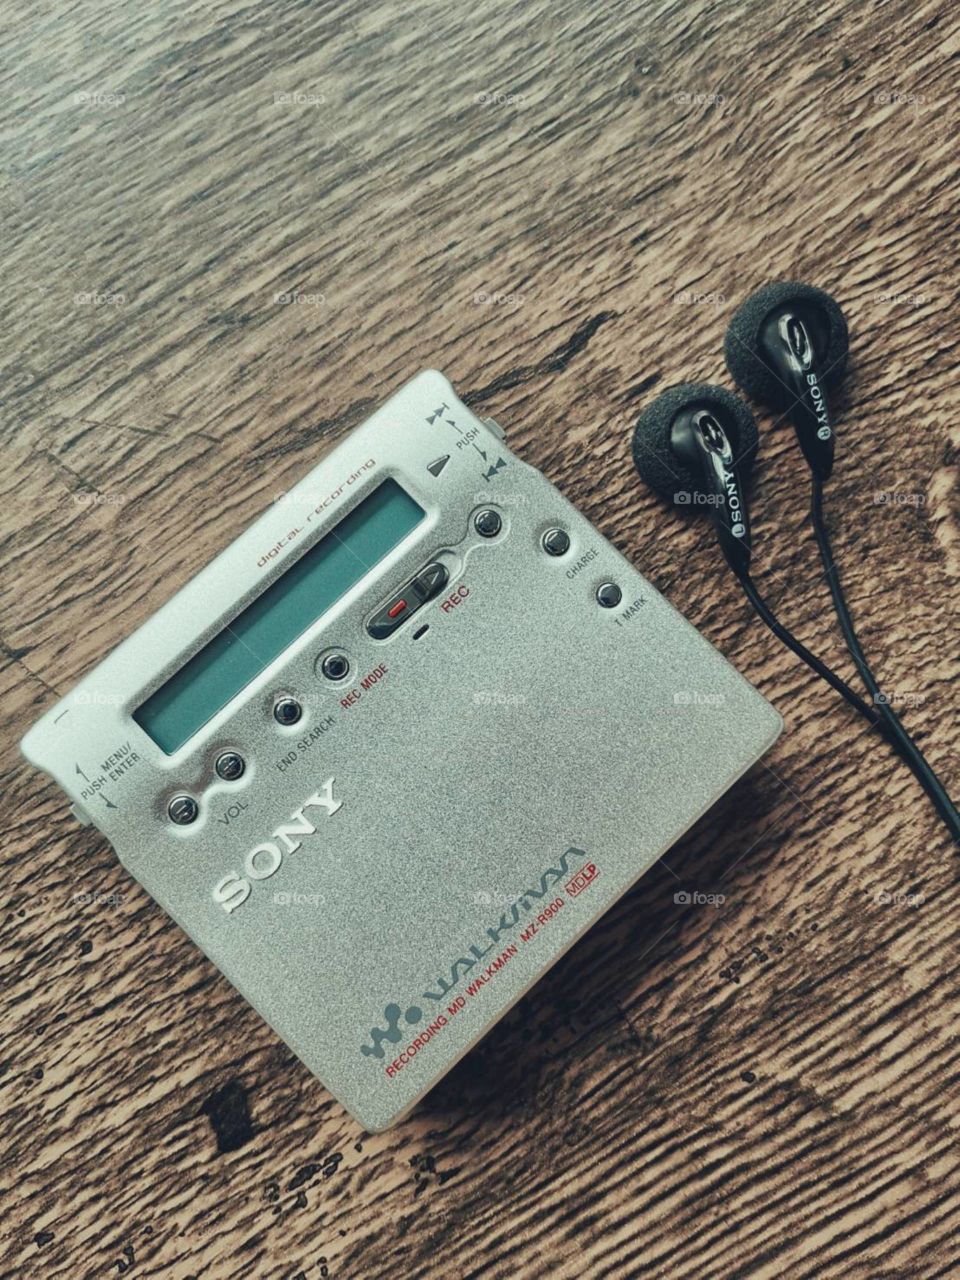 Sony Walkman cassette player